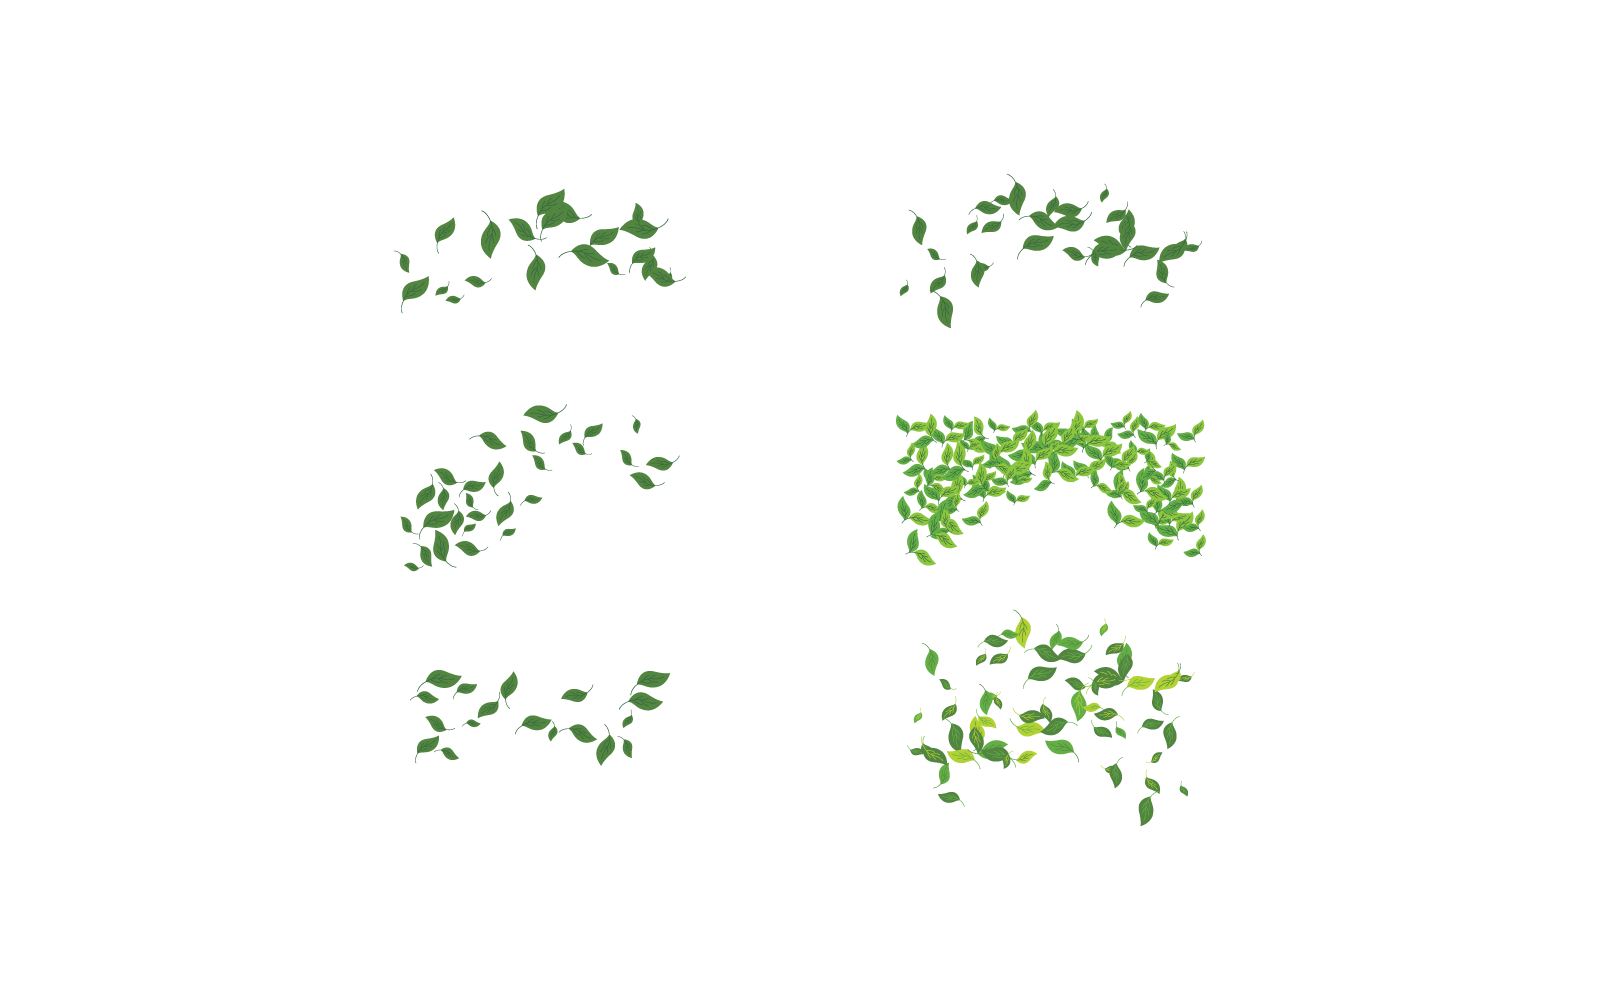 Leaves background design pattern vector illustration